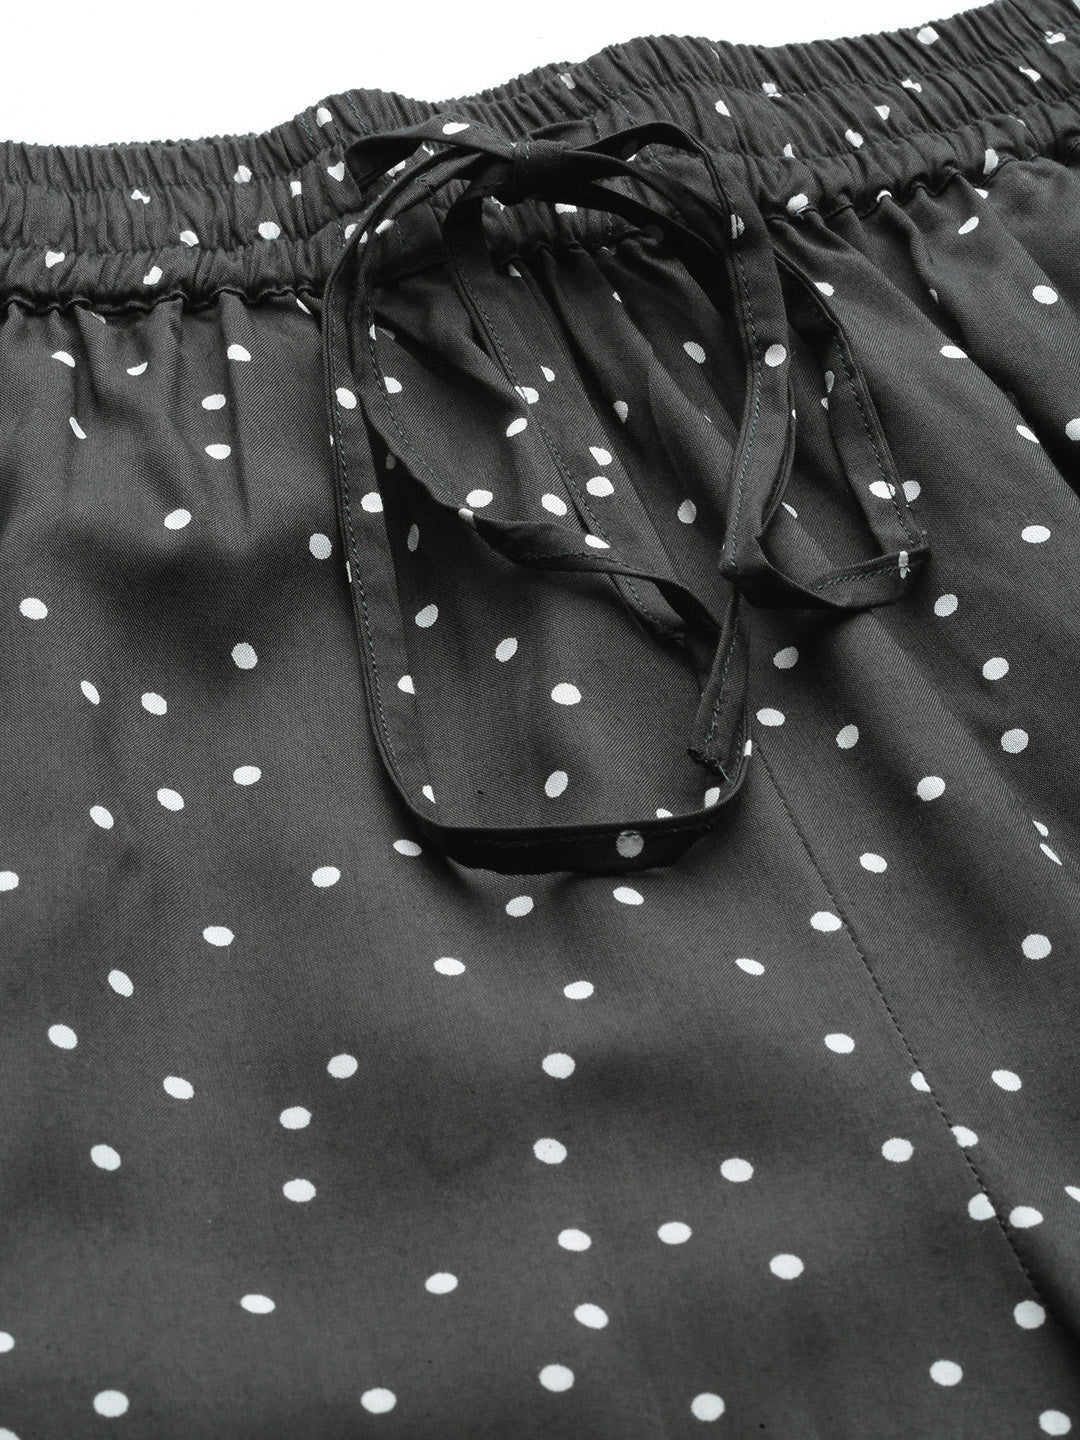 women polka dot printed night suit grey